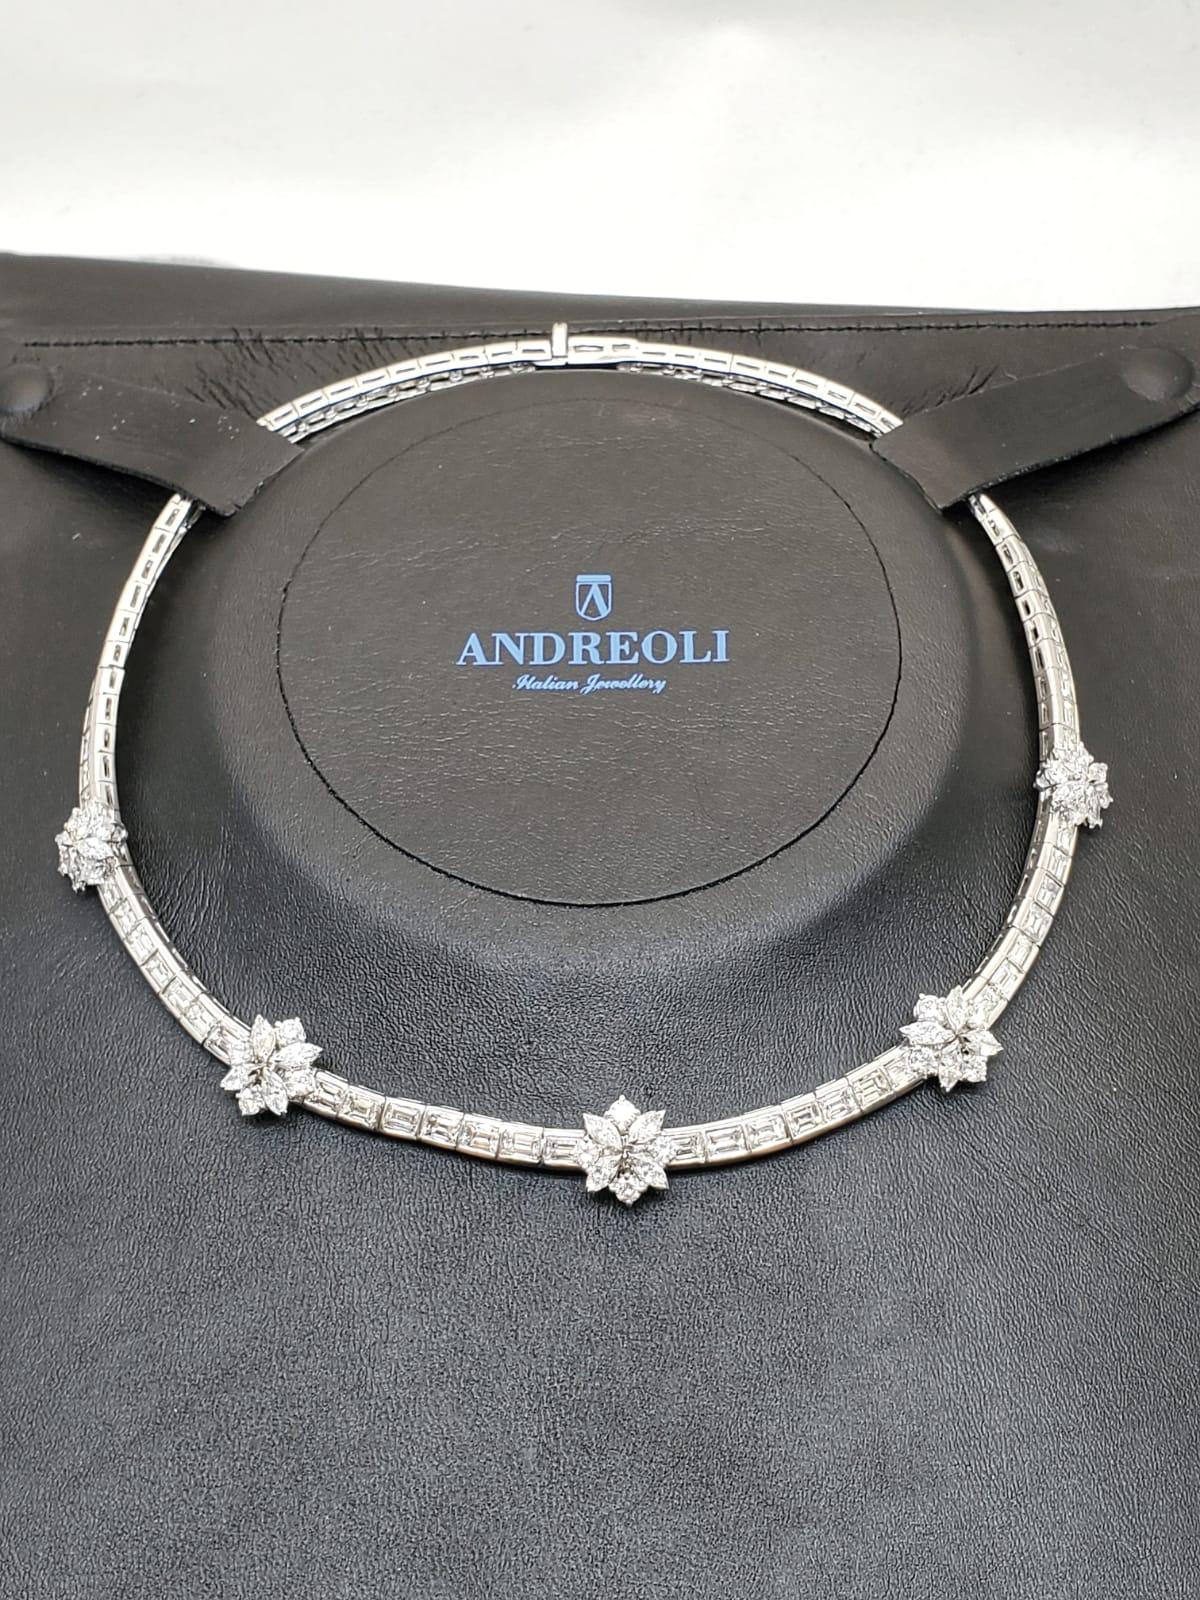 Baguette Cut Andreoli Diamond Baguette Marquise Brilliant Flower Line Necklace 18 Karat Gold For Sale